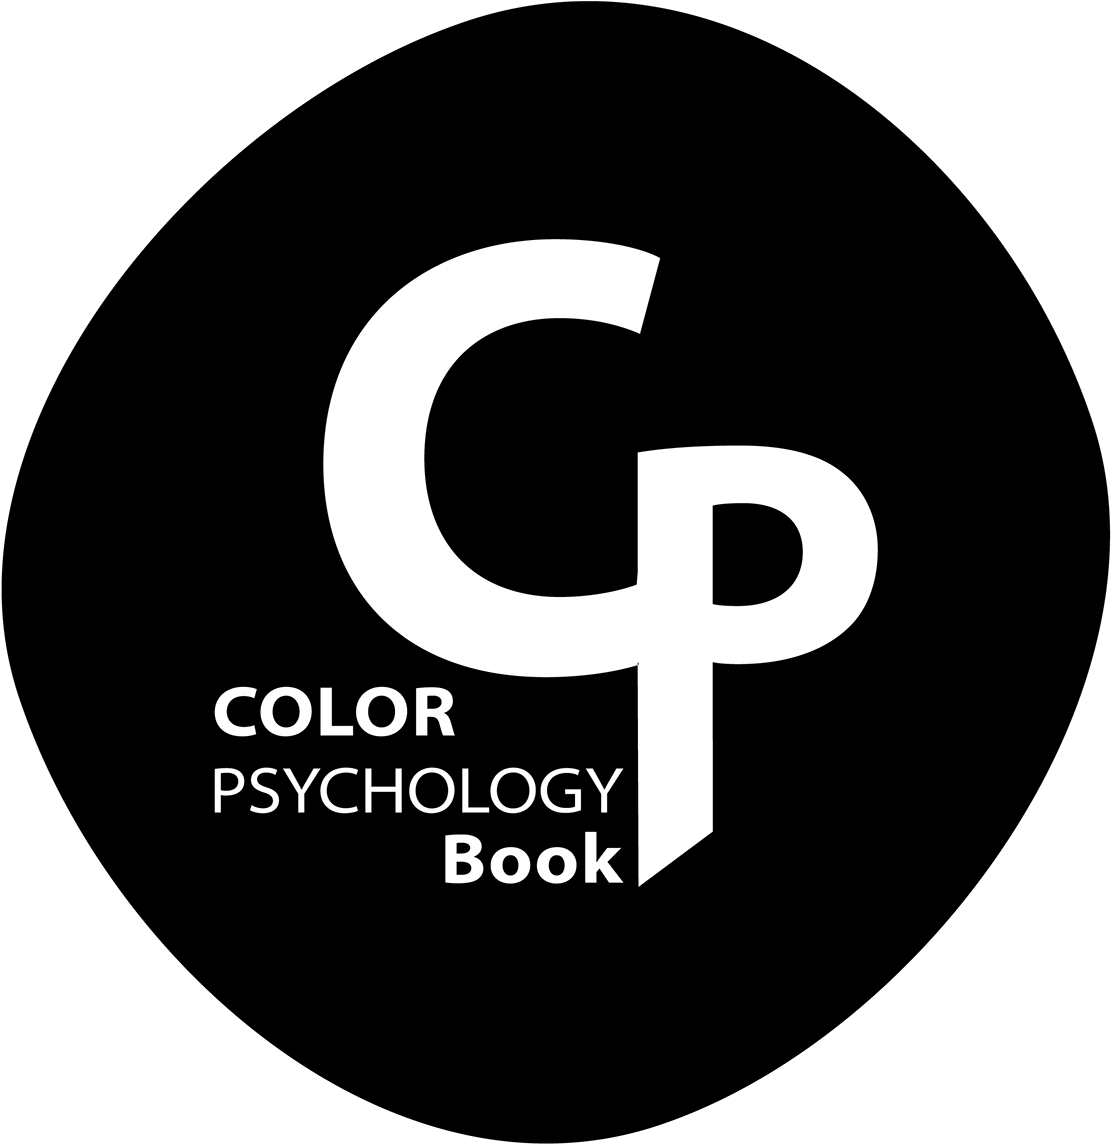 Color Psychology Book Logo PNG